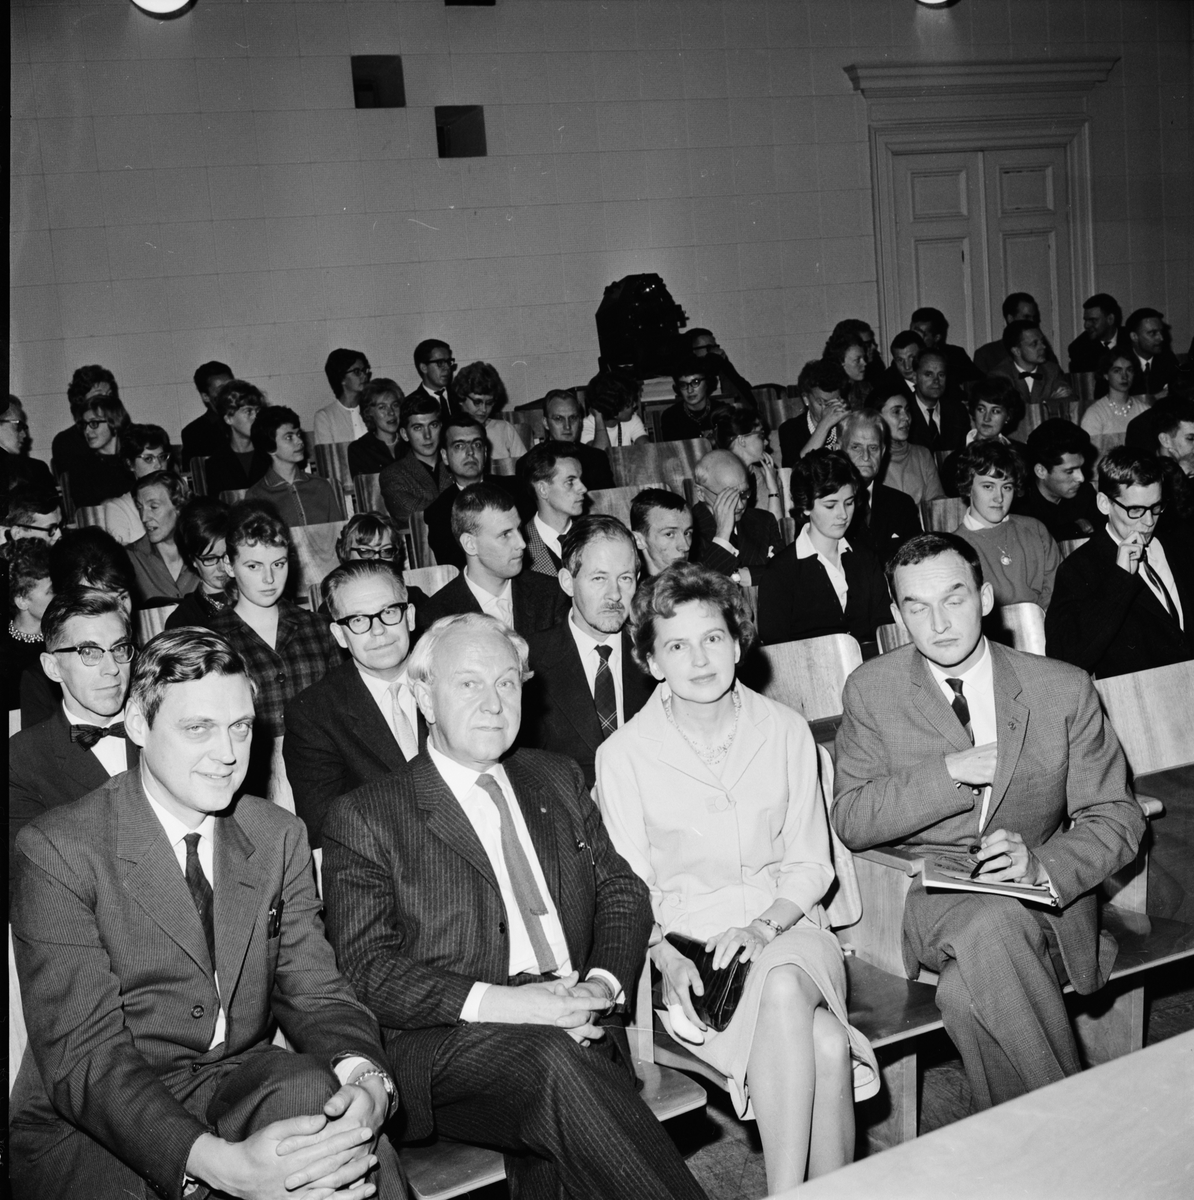 Språkvårdssamfundet - "spirituellt kåseri inledde diskussion om tidningssvenska", Uppsala 1962